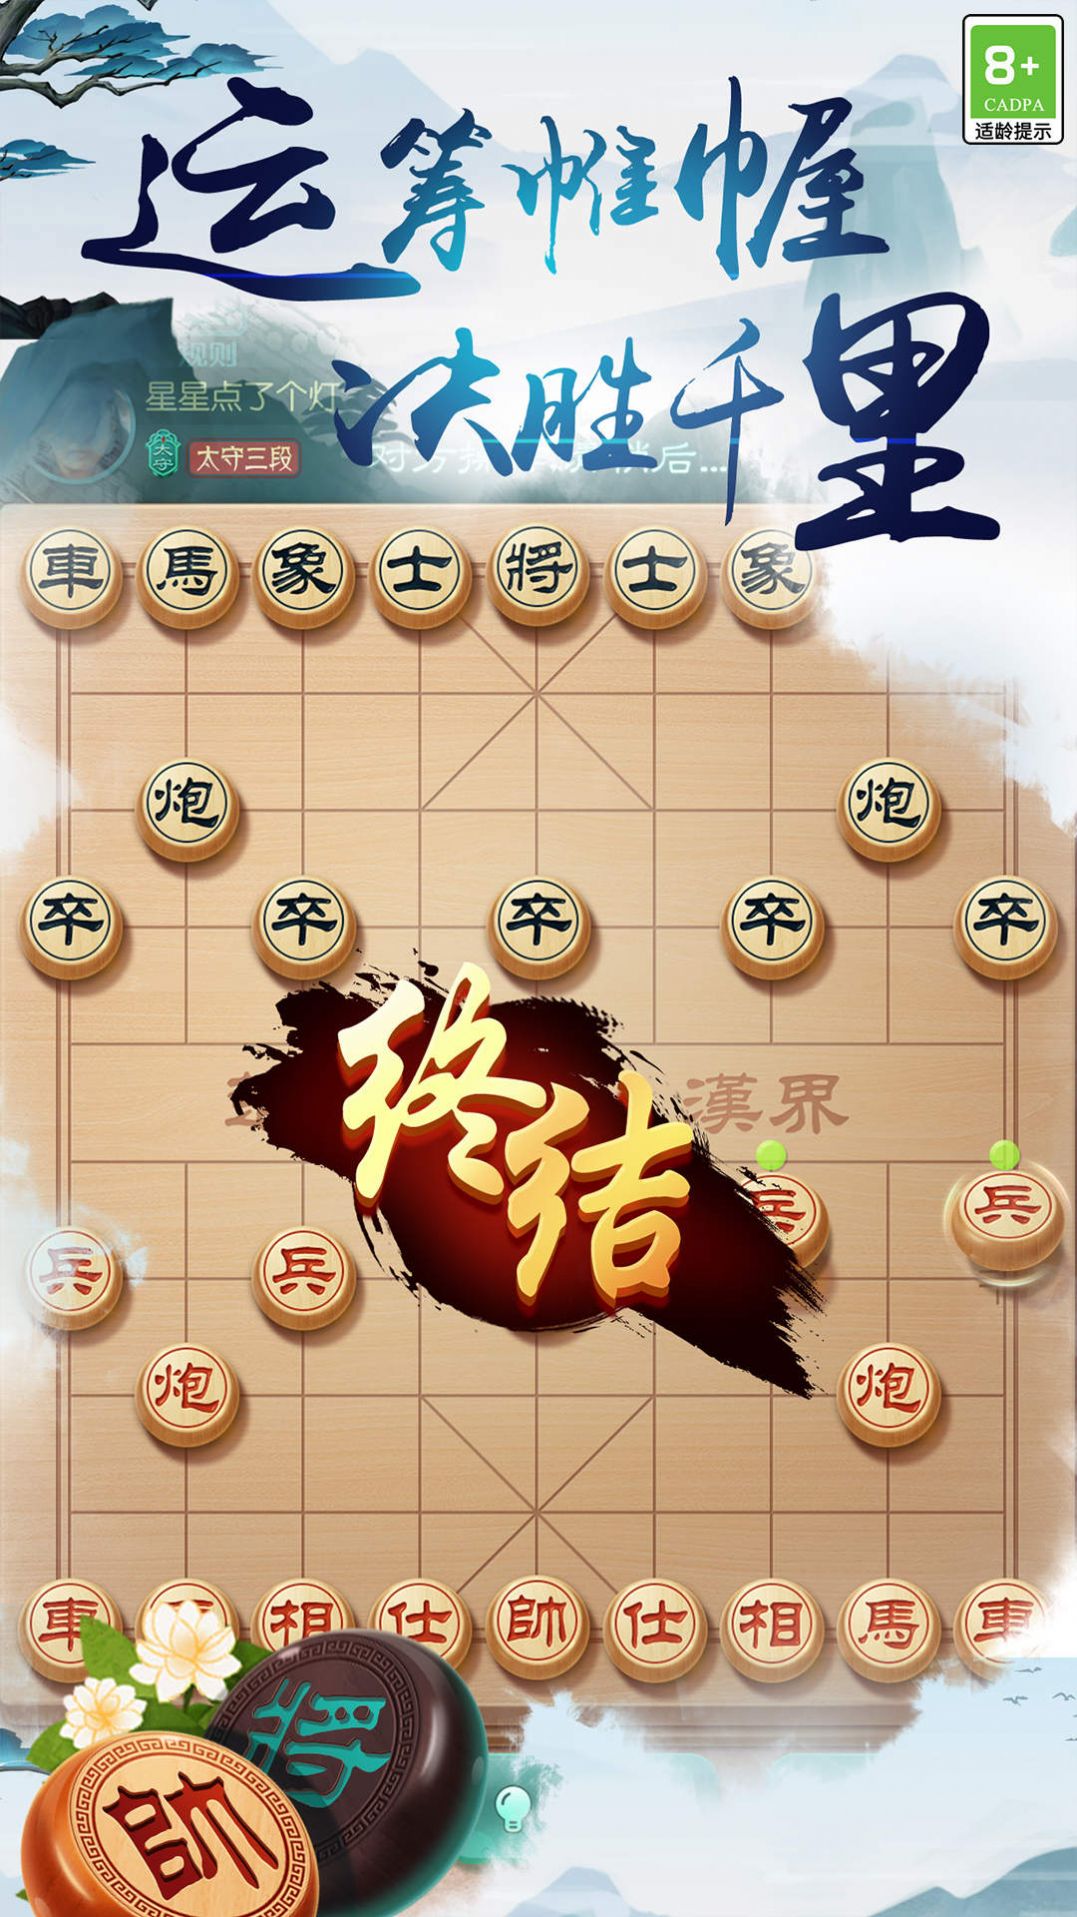 中国象棋之战游戏图1